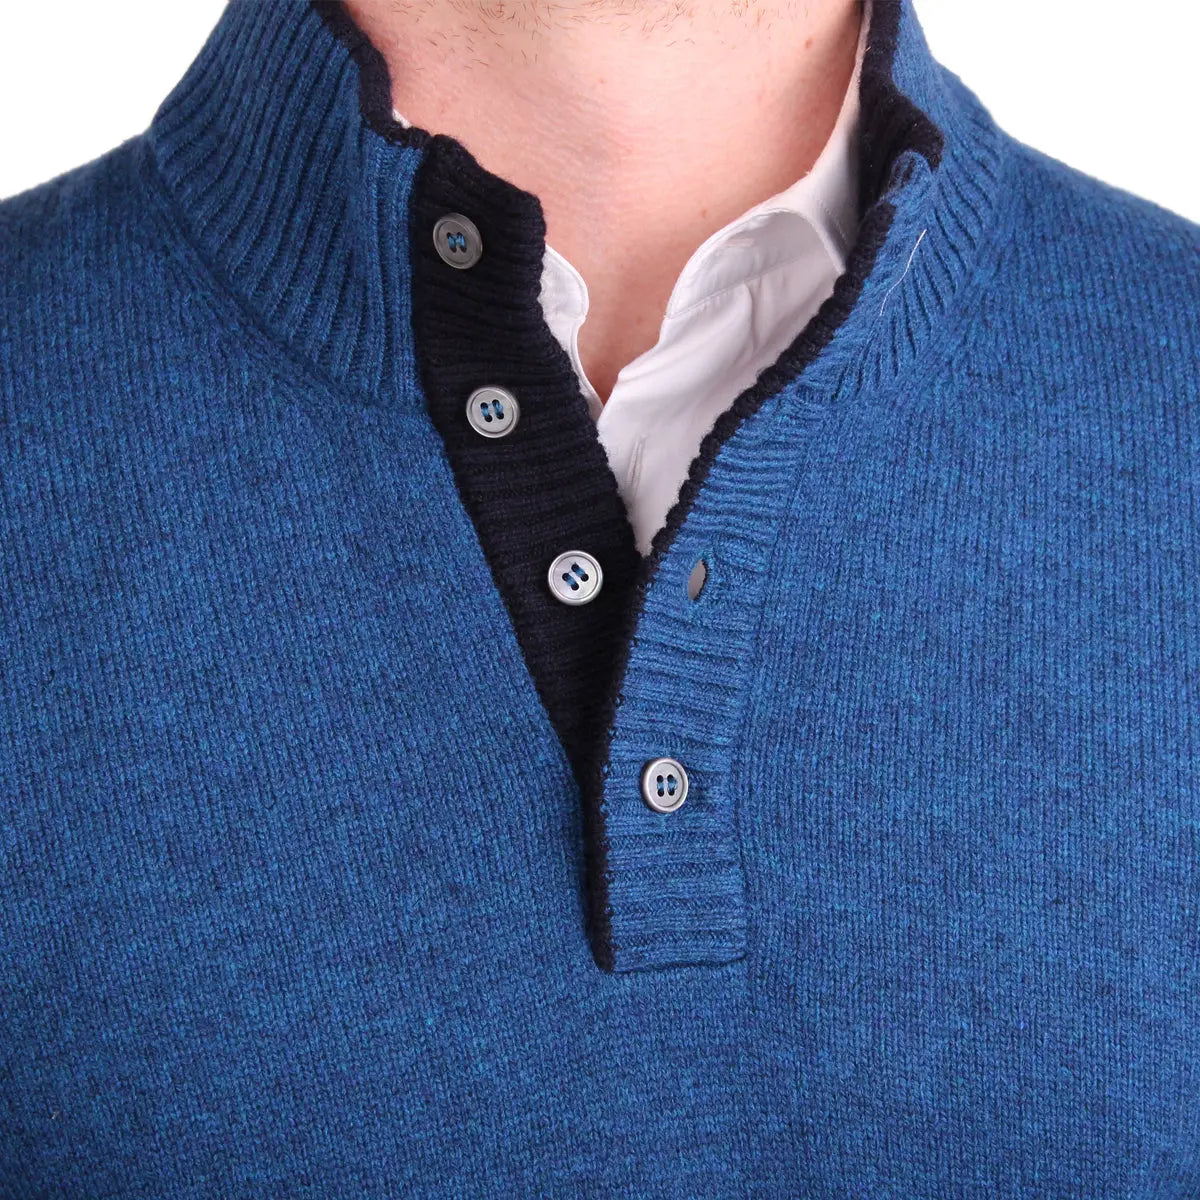 Blue & Navy Half-Button Virgin Wool Sweater  Robert Old   